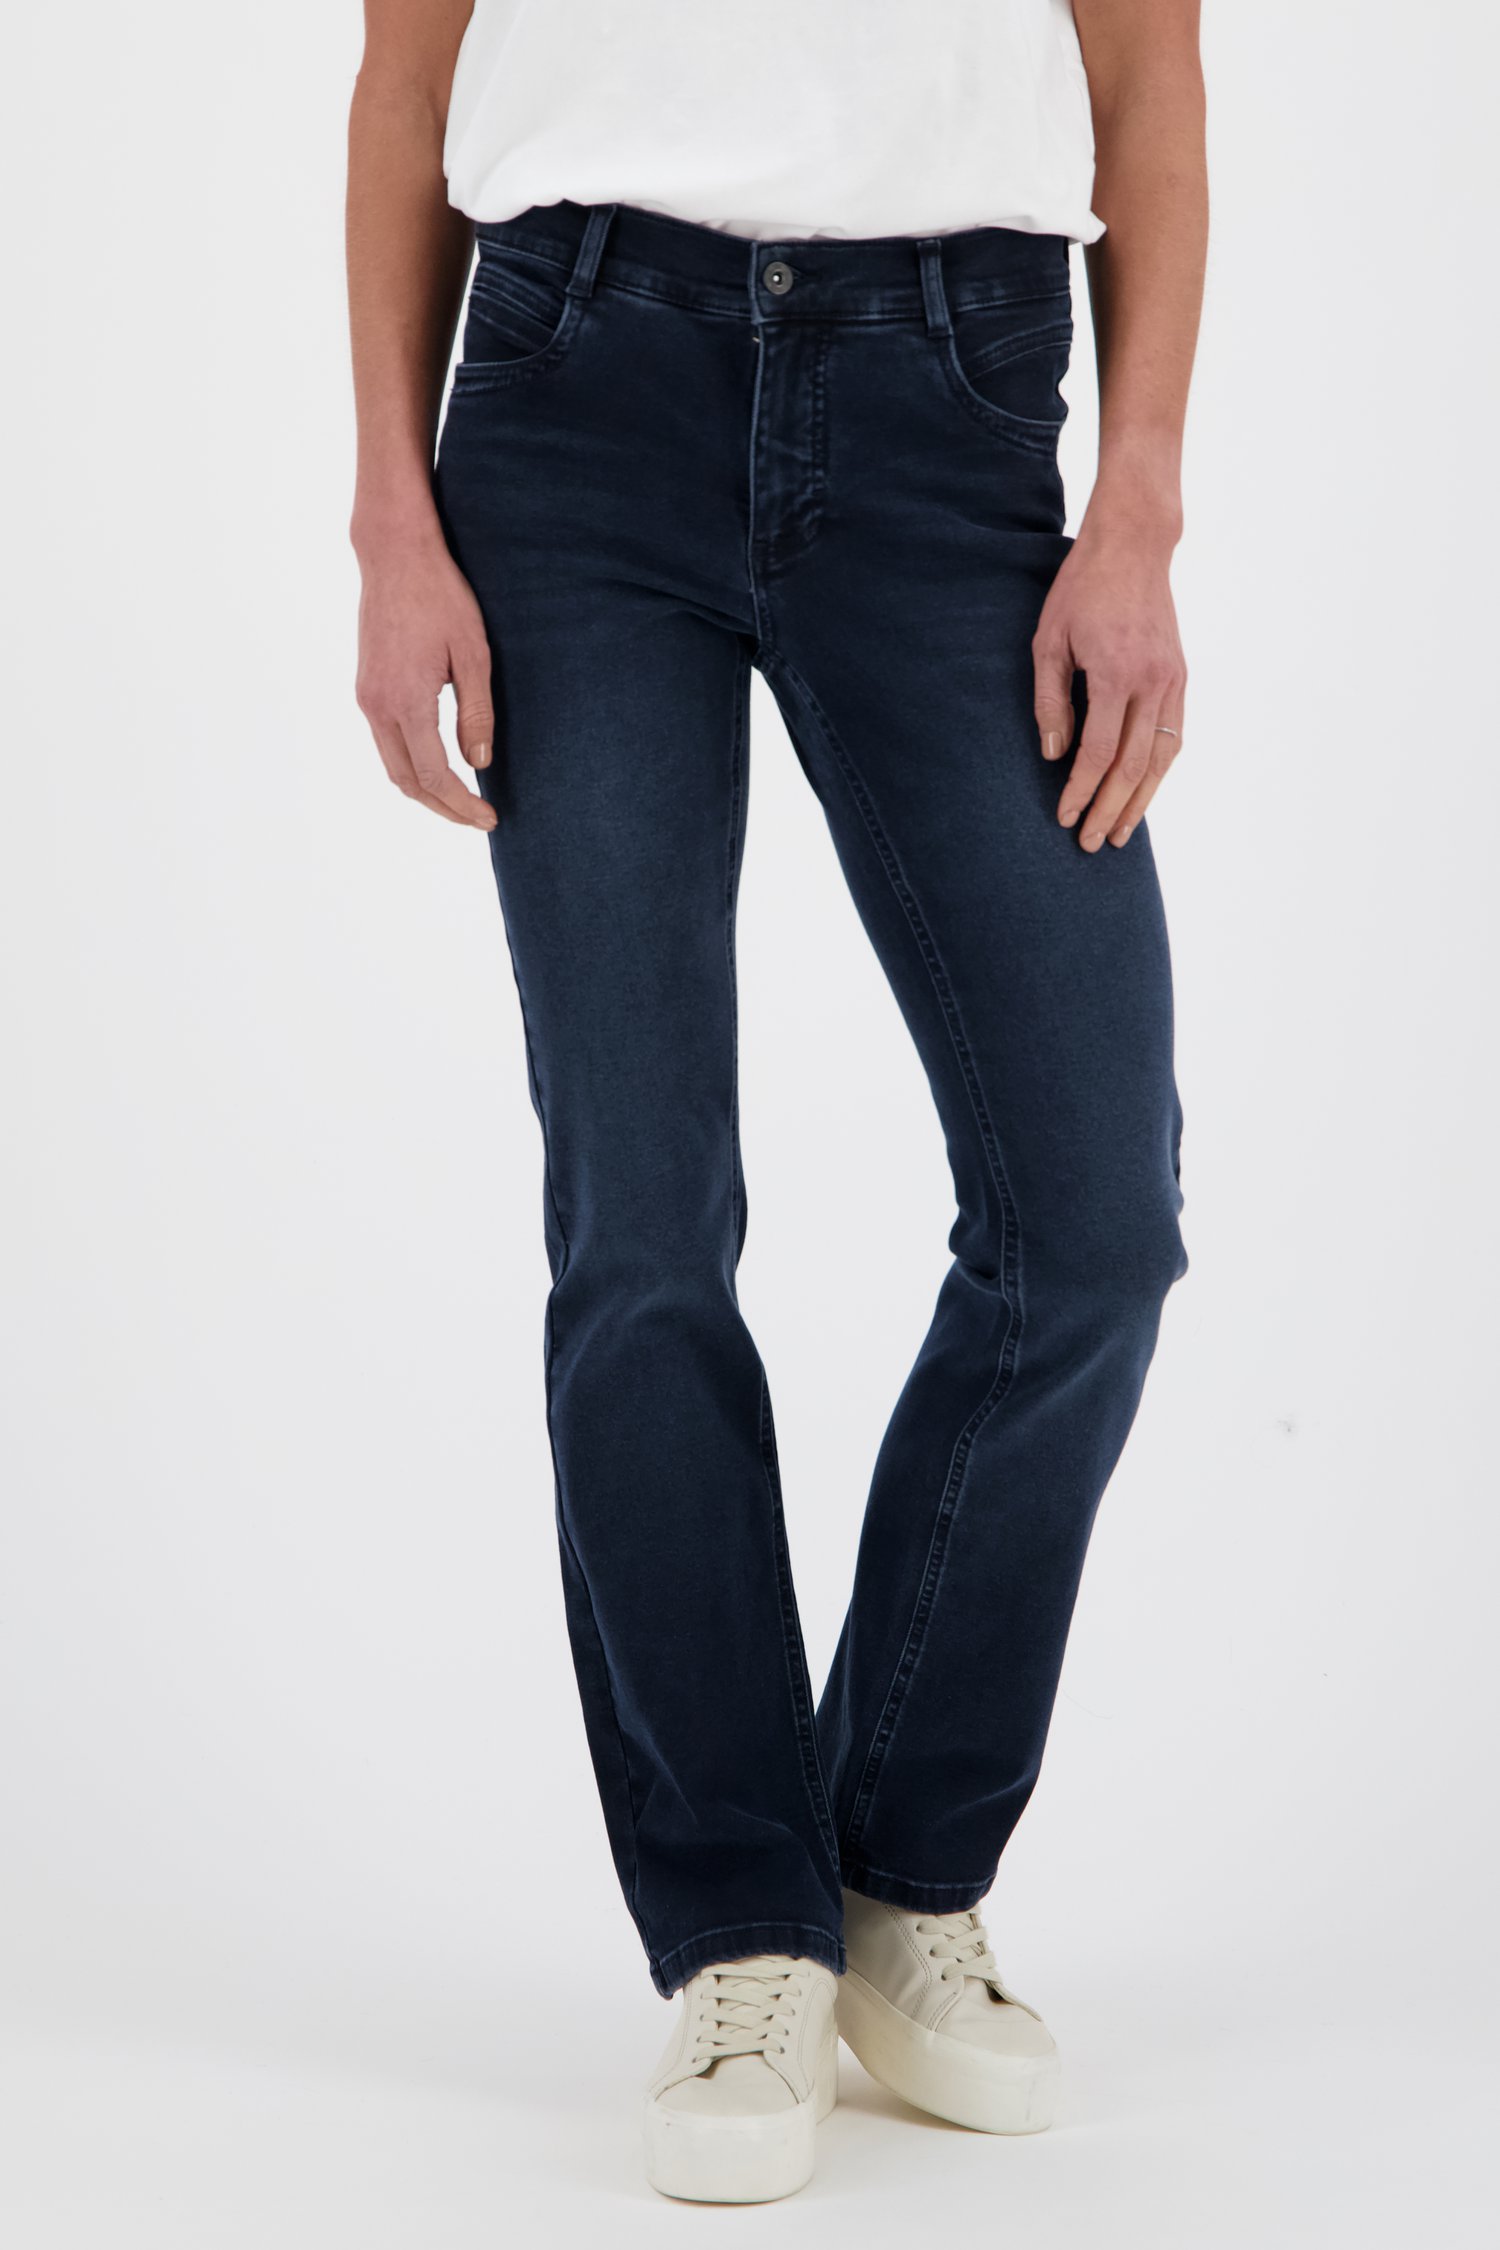 aanbidden Gespecificeerd Dertig Donkerblauwe jeans - straight fit van Angels | 9774869 | e5